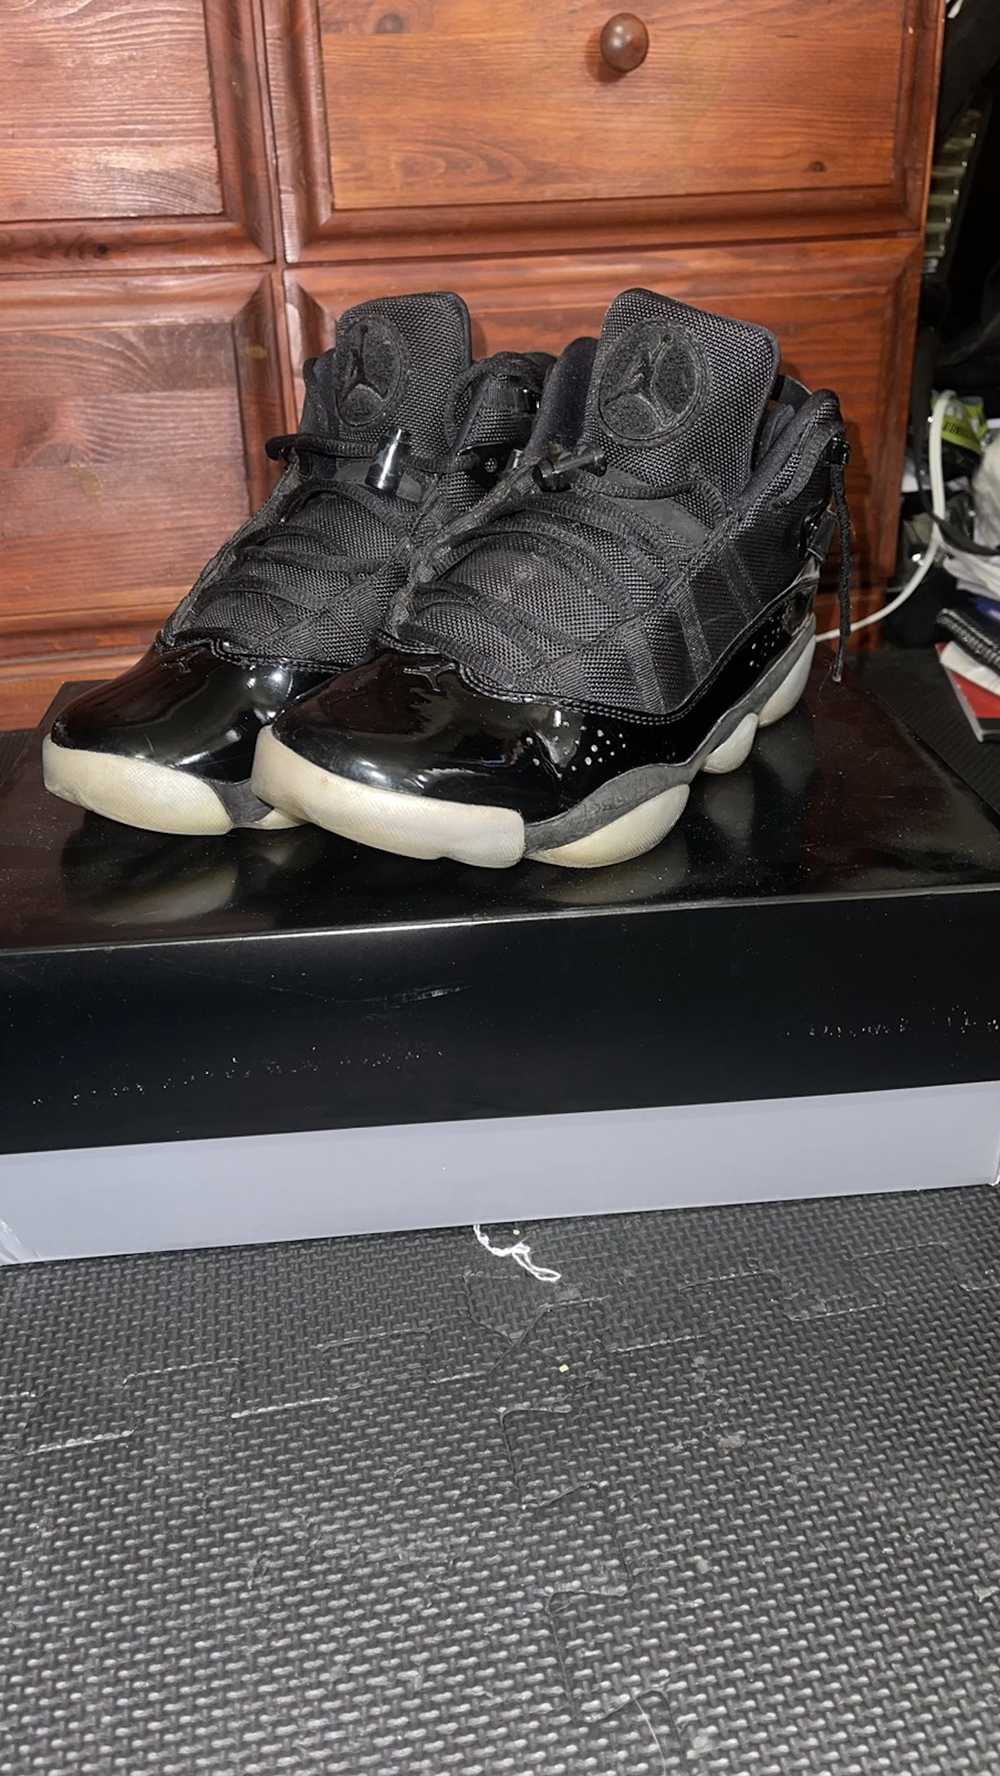 Jordan Brand × Nike Jordan 6 Rings - image 2